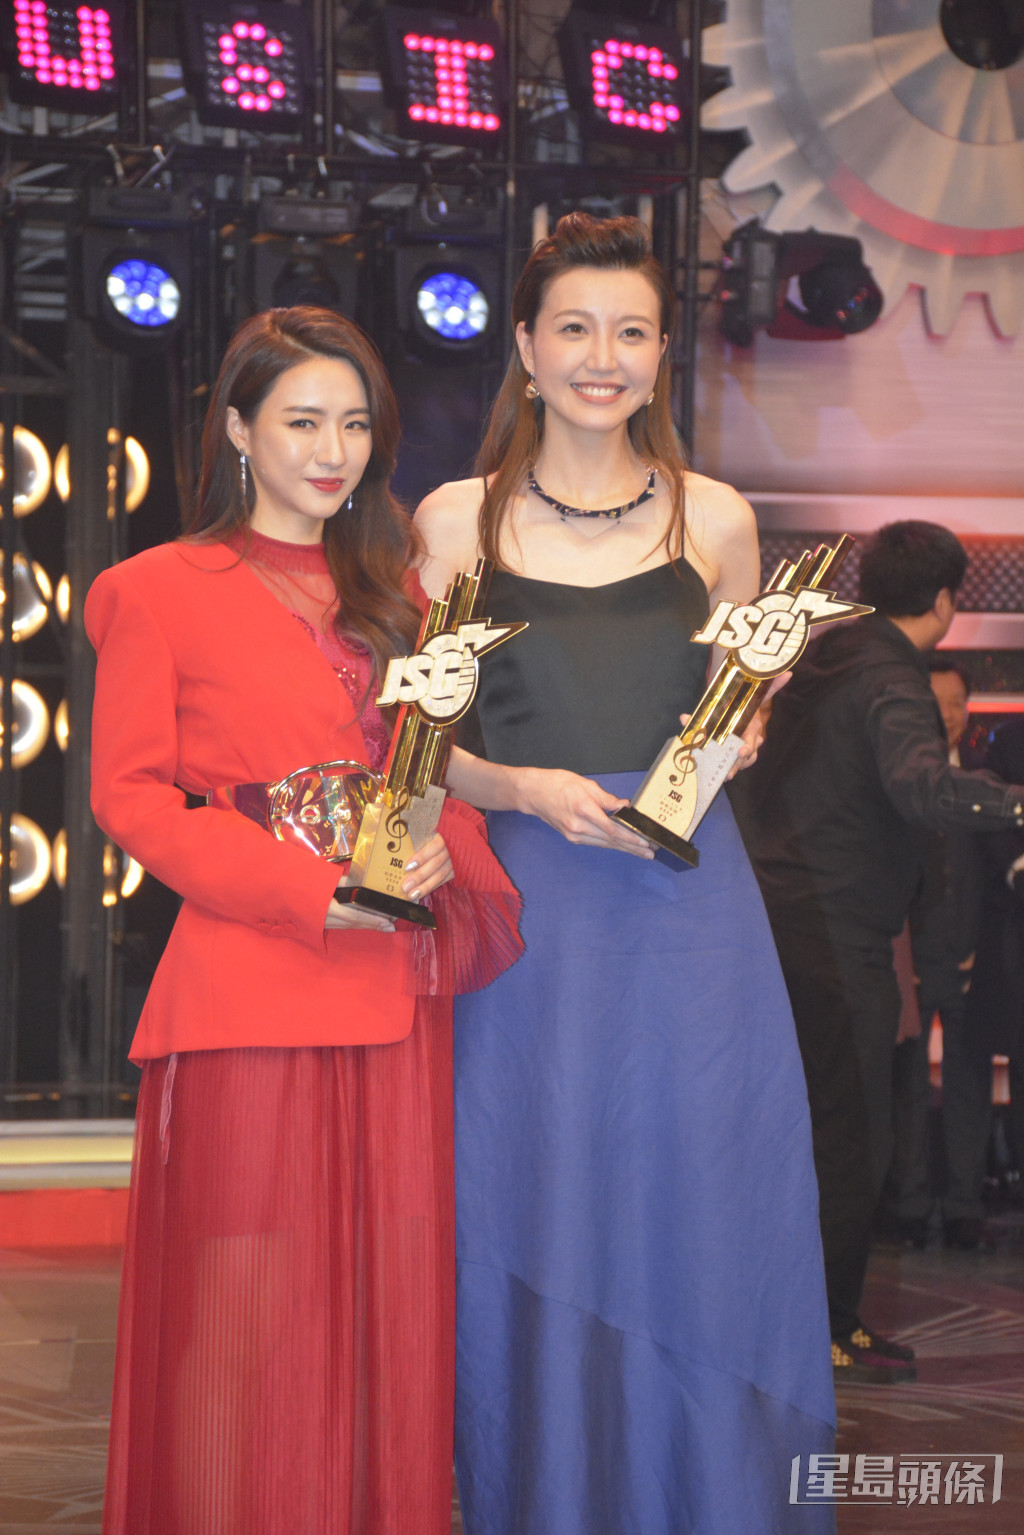 菊梓桥在《2018年度劲歌金曲颁奖典礼》获得“最受欢迎女歌星”奖。